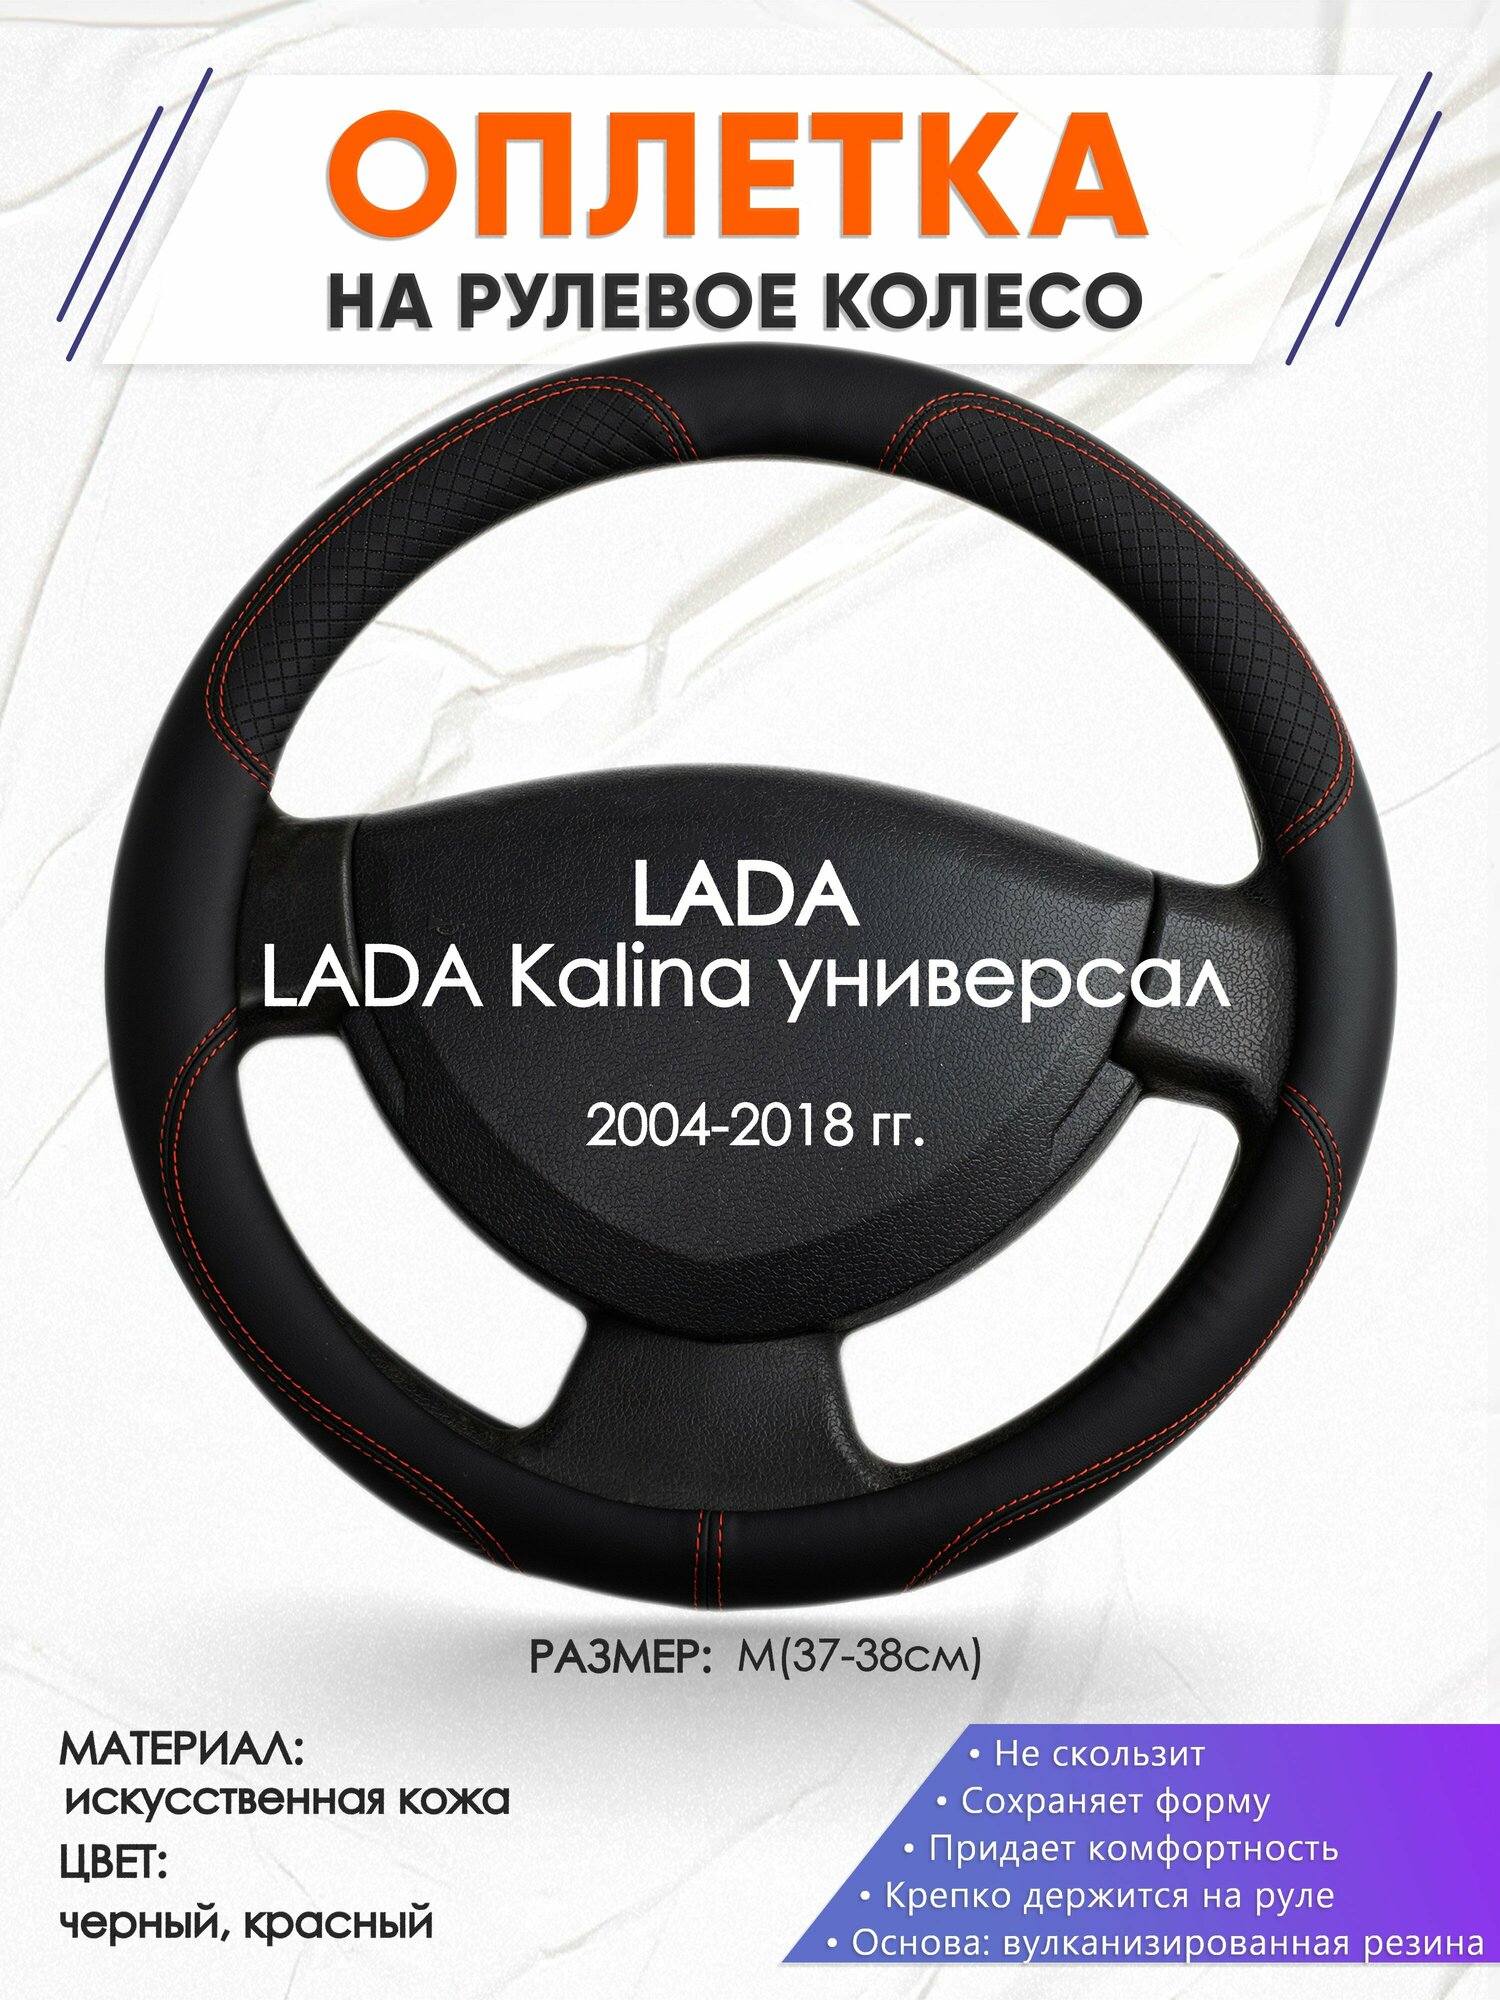 Оплетка наруль для LADA Kalina универсал(Лада Калина) 2004-2018 годов выпуска, размер M(37-38см), Искусственная кожа 61